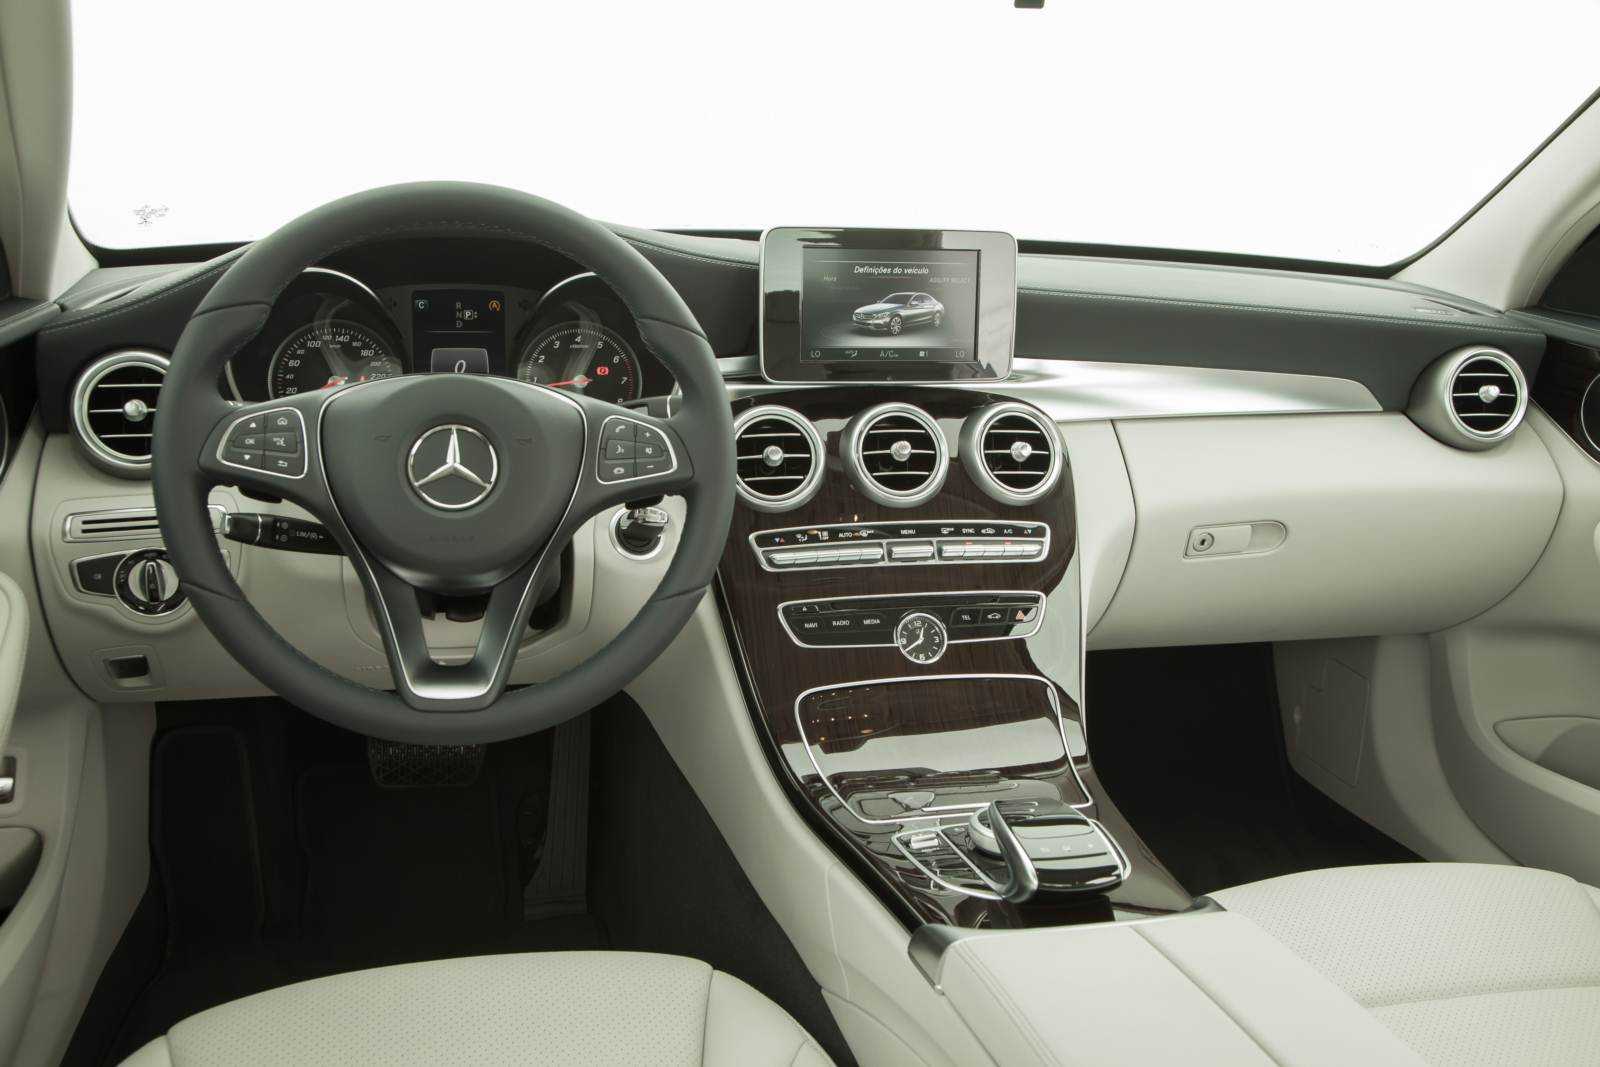 Mercedes-benz glc 2020 российской сборки, выбор есть!? подробно о главном - major auto - новости